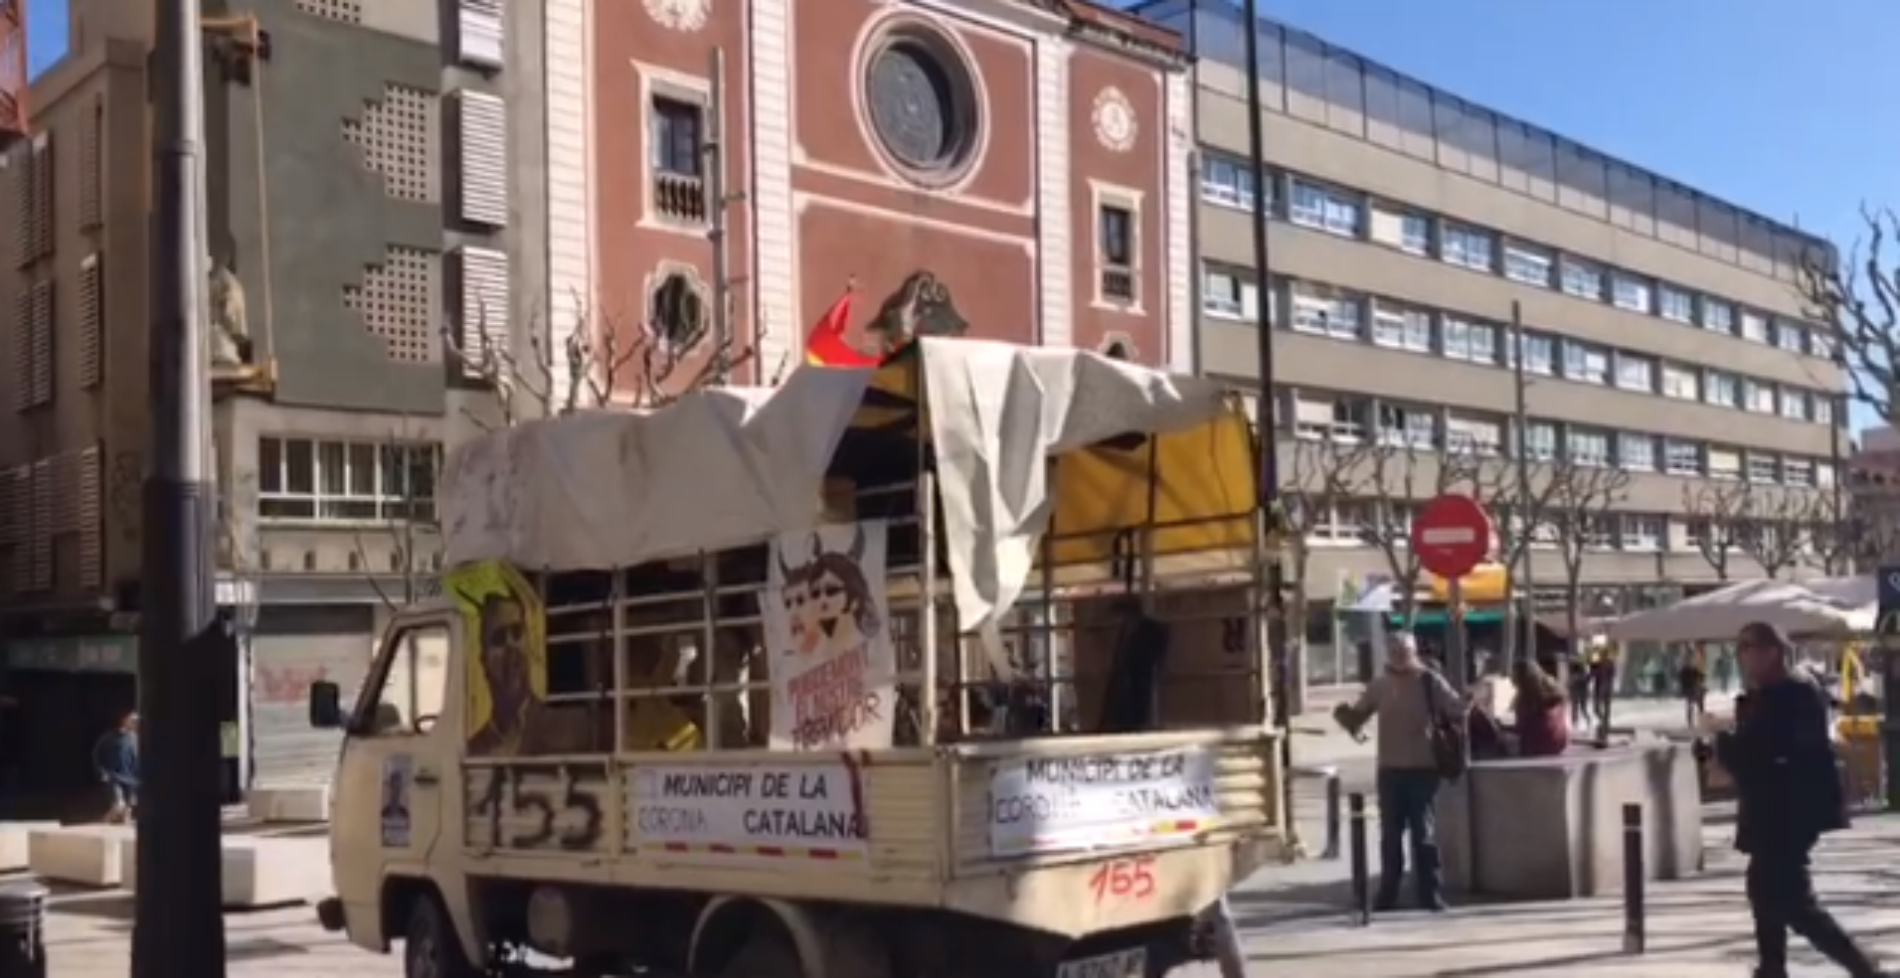 Agressió a Mataró per part del propietari del camió del 155